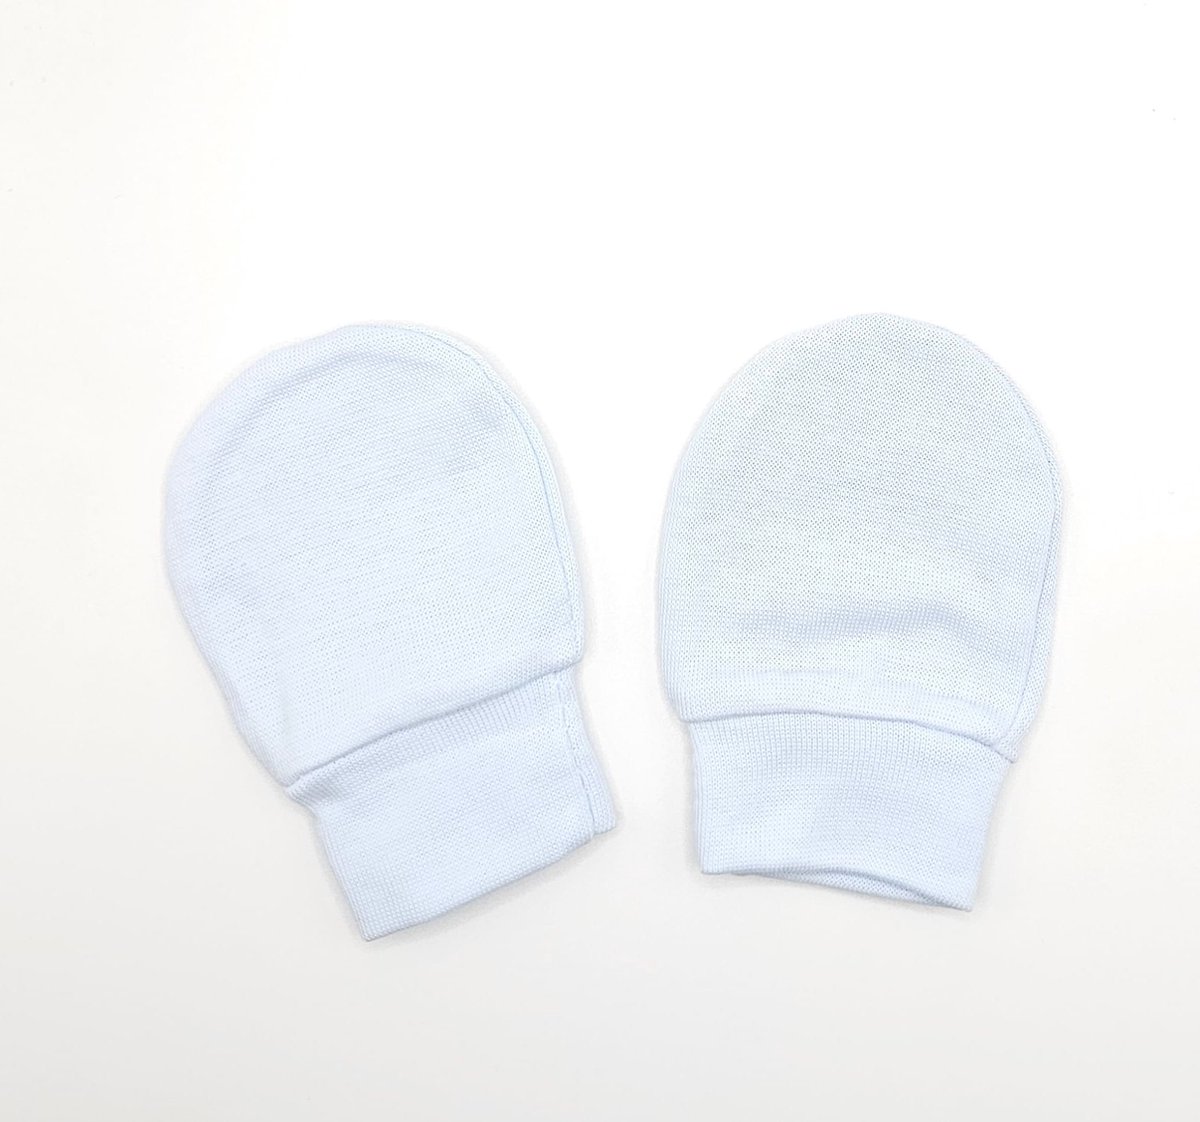 Baby krabwantjes baby handschoentjes licht blauw baby blue | 0-2 maanden | anti krabwanten newborn